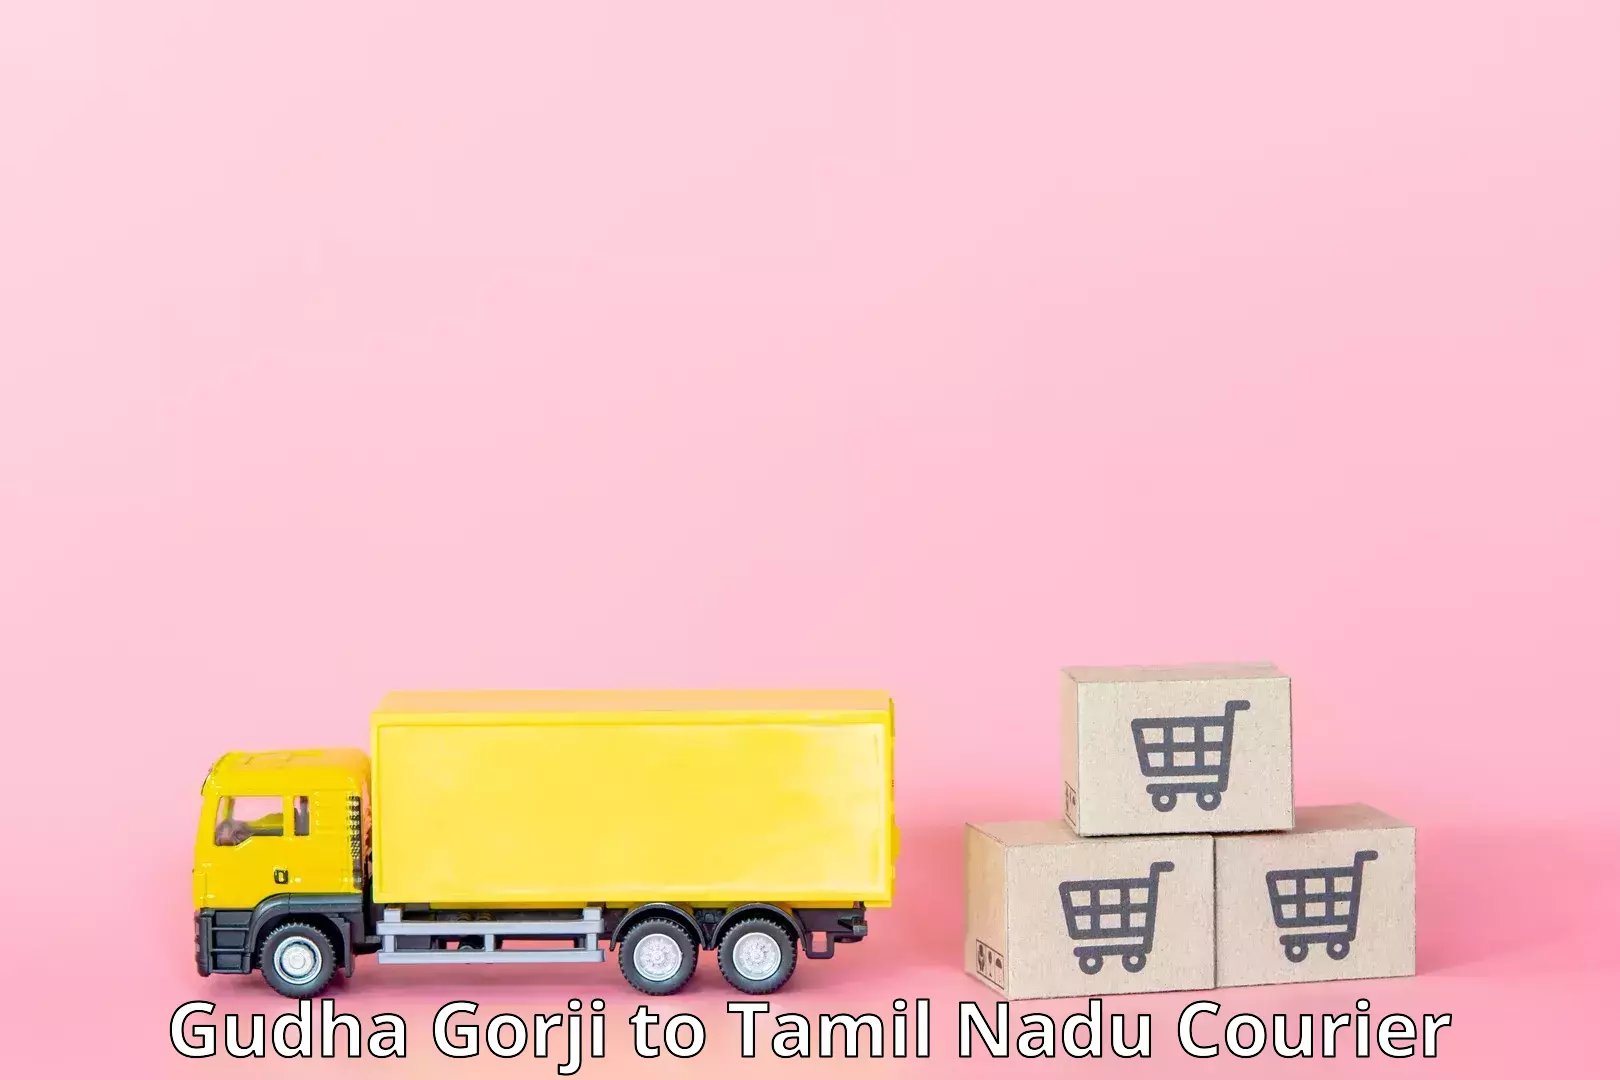 Global shipping solutions in Gudha Gorji to Tiruturaipundi